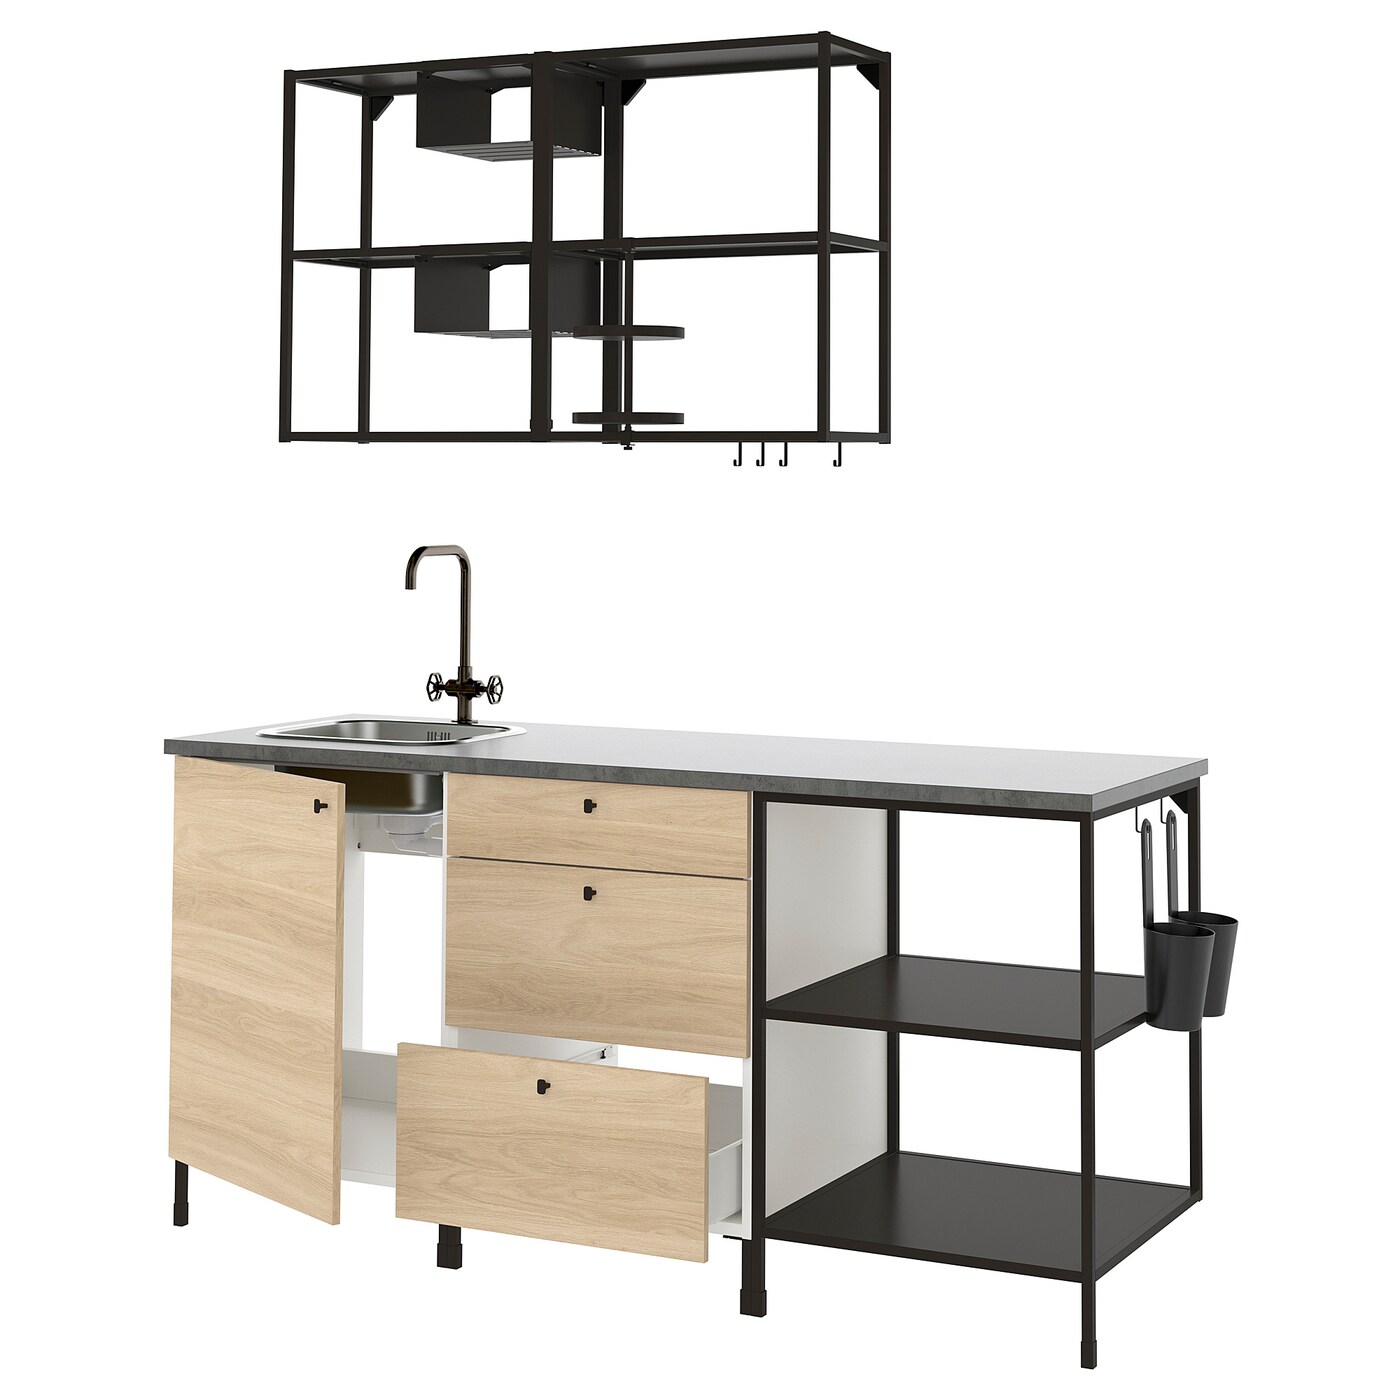 Комбинация для кухонного хранения  - ENHET  IKEA/ ЭНХЕТ ИКЕА, 183x63,5x222 см, белый/бежевый/черный